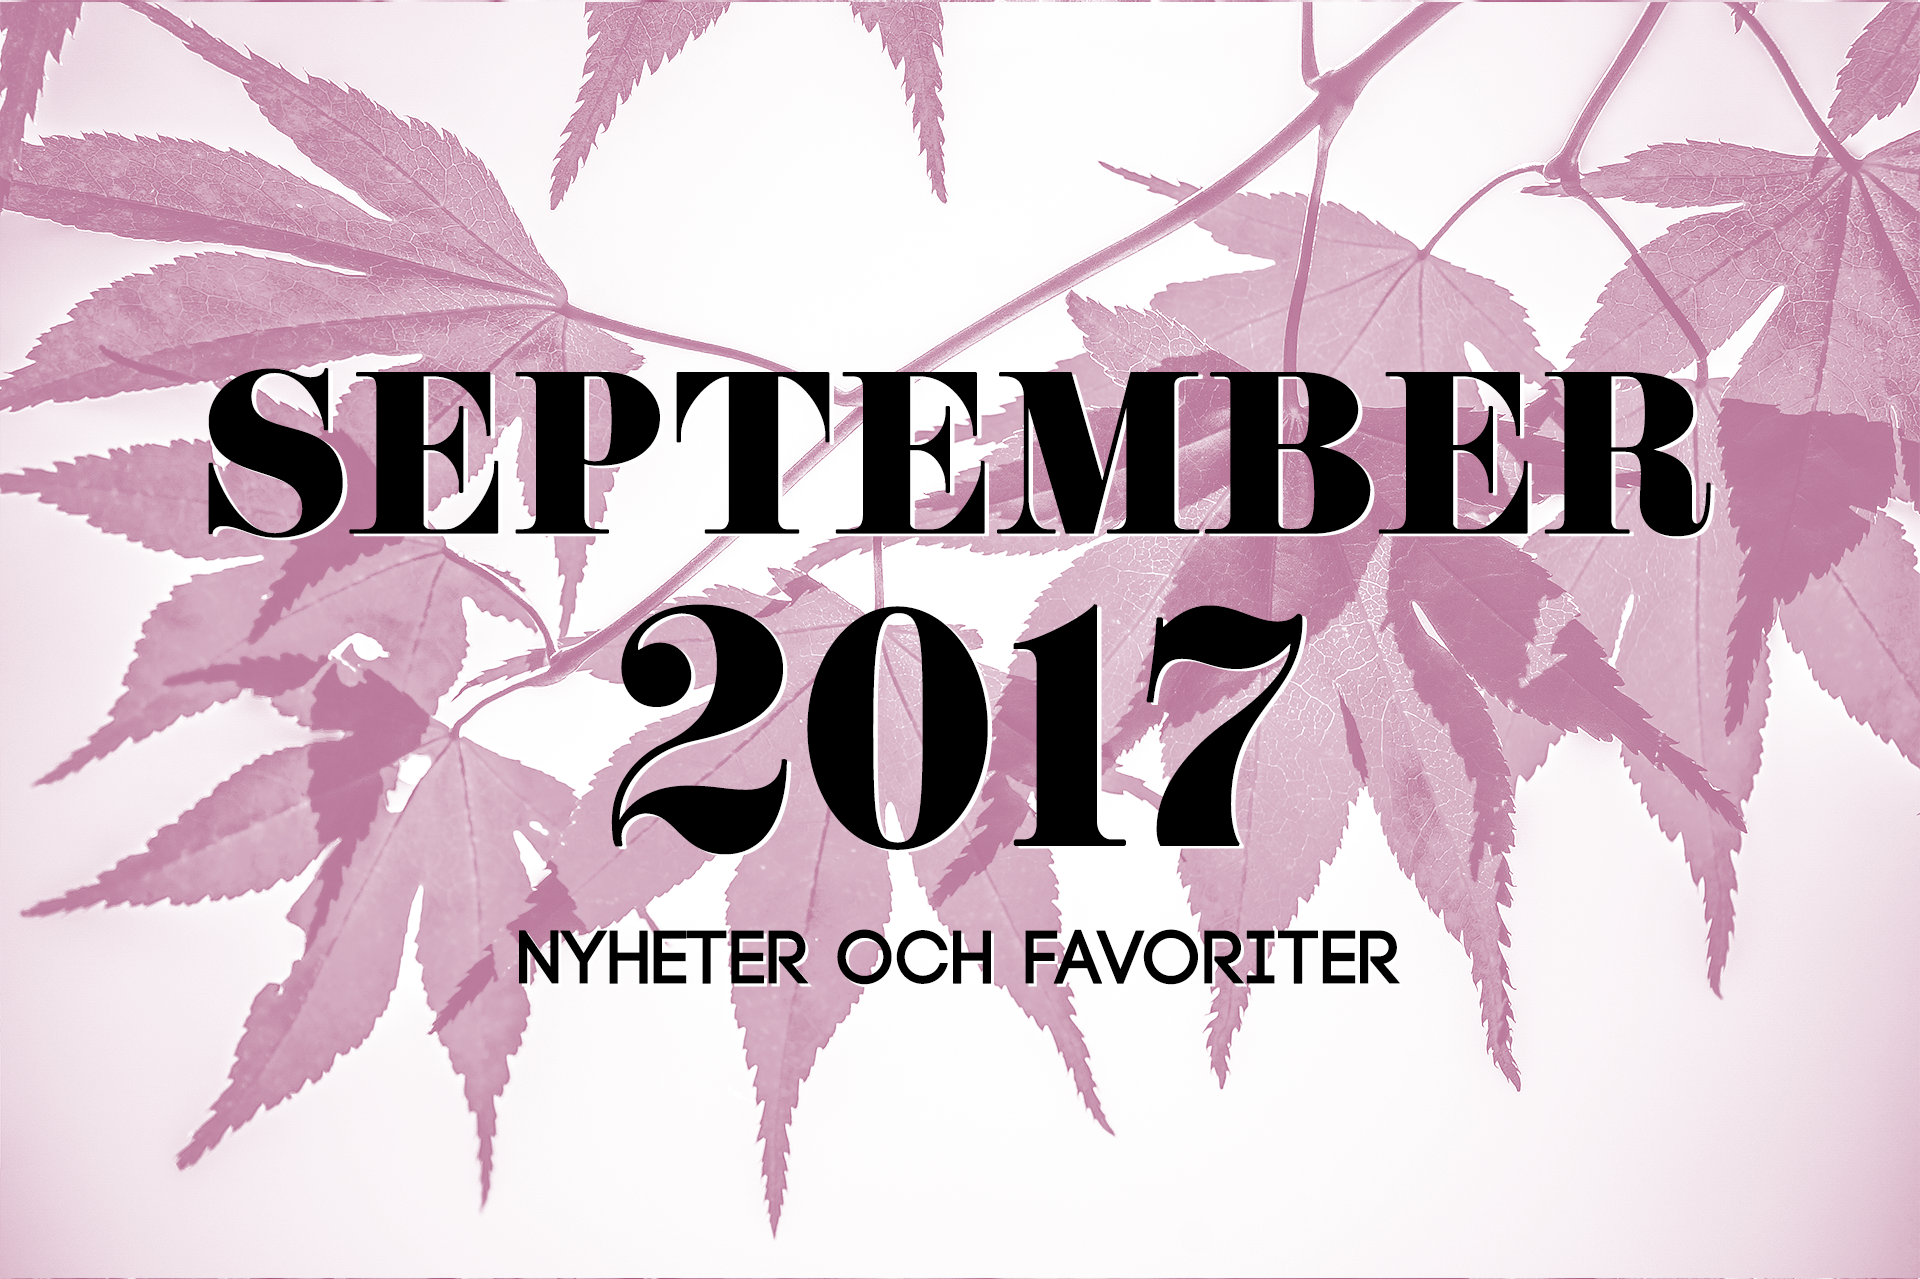 September 2017: Nyheter och favoriter